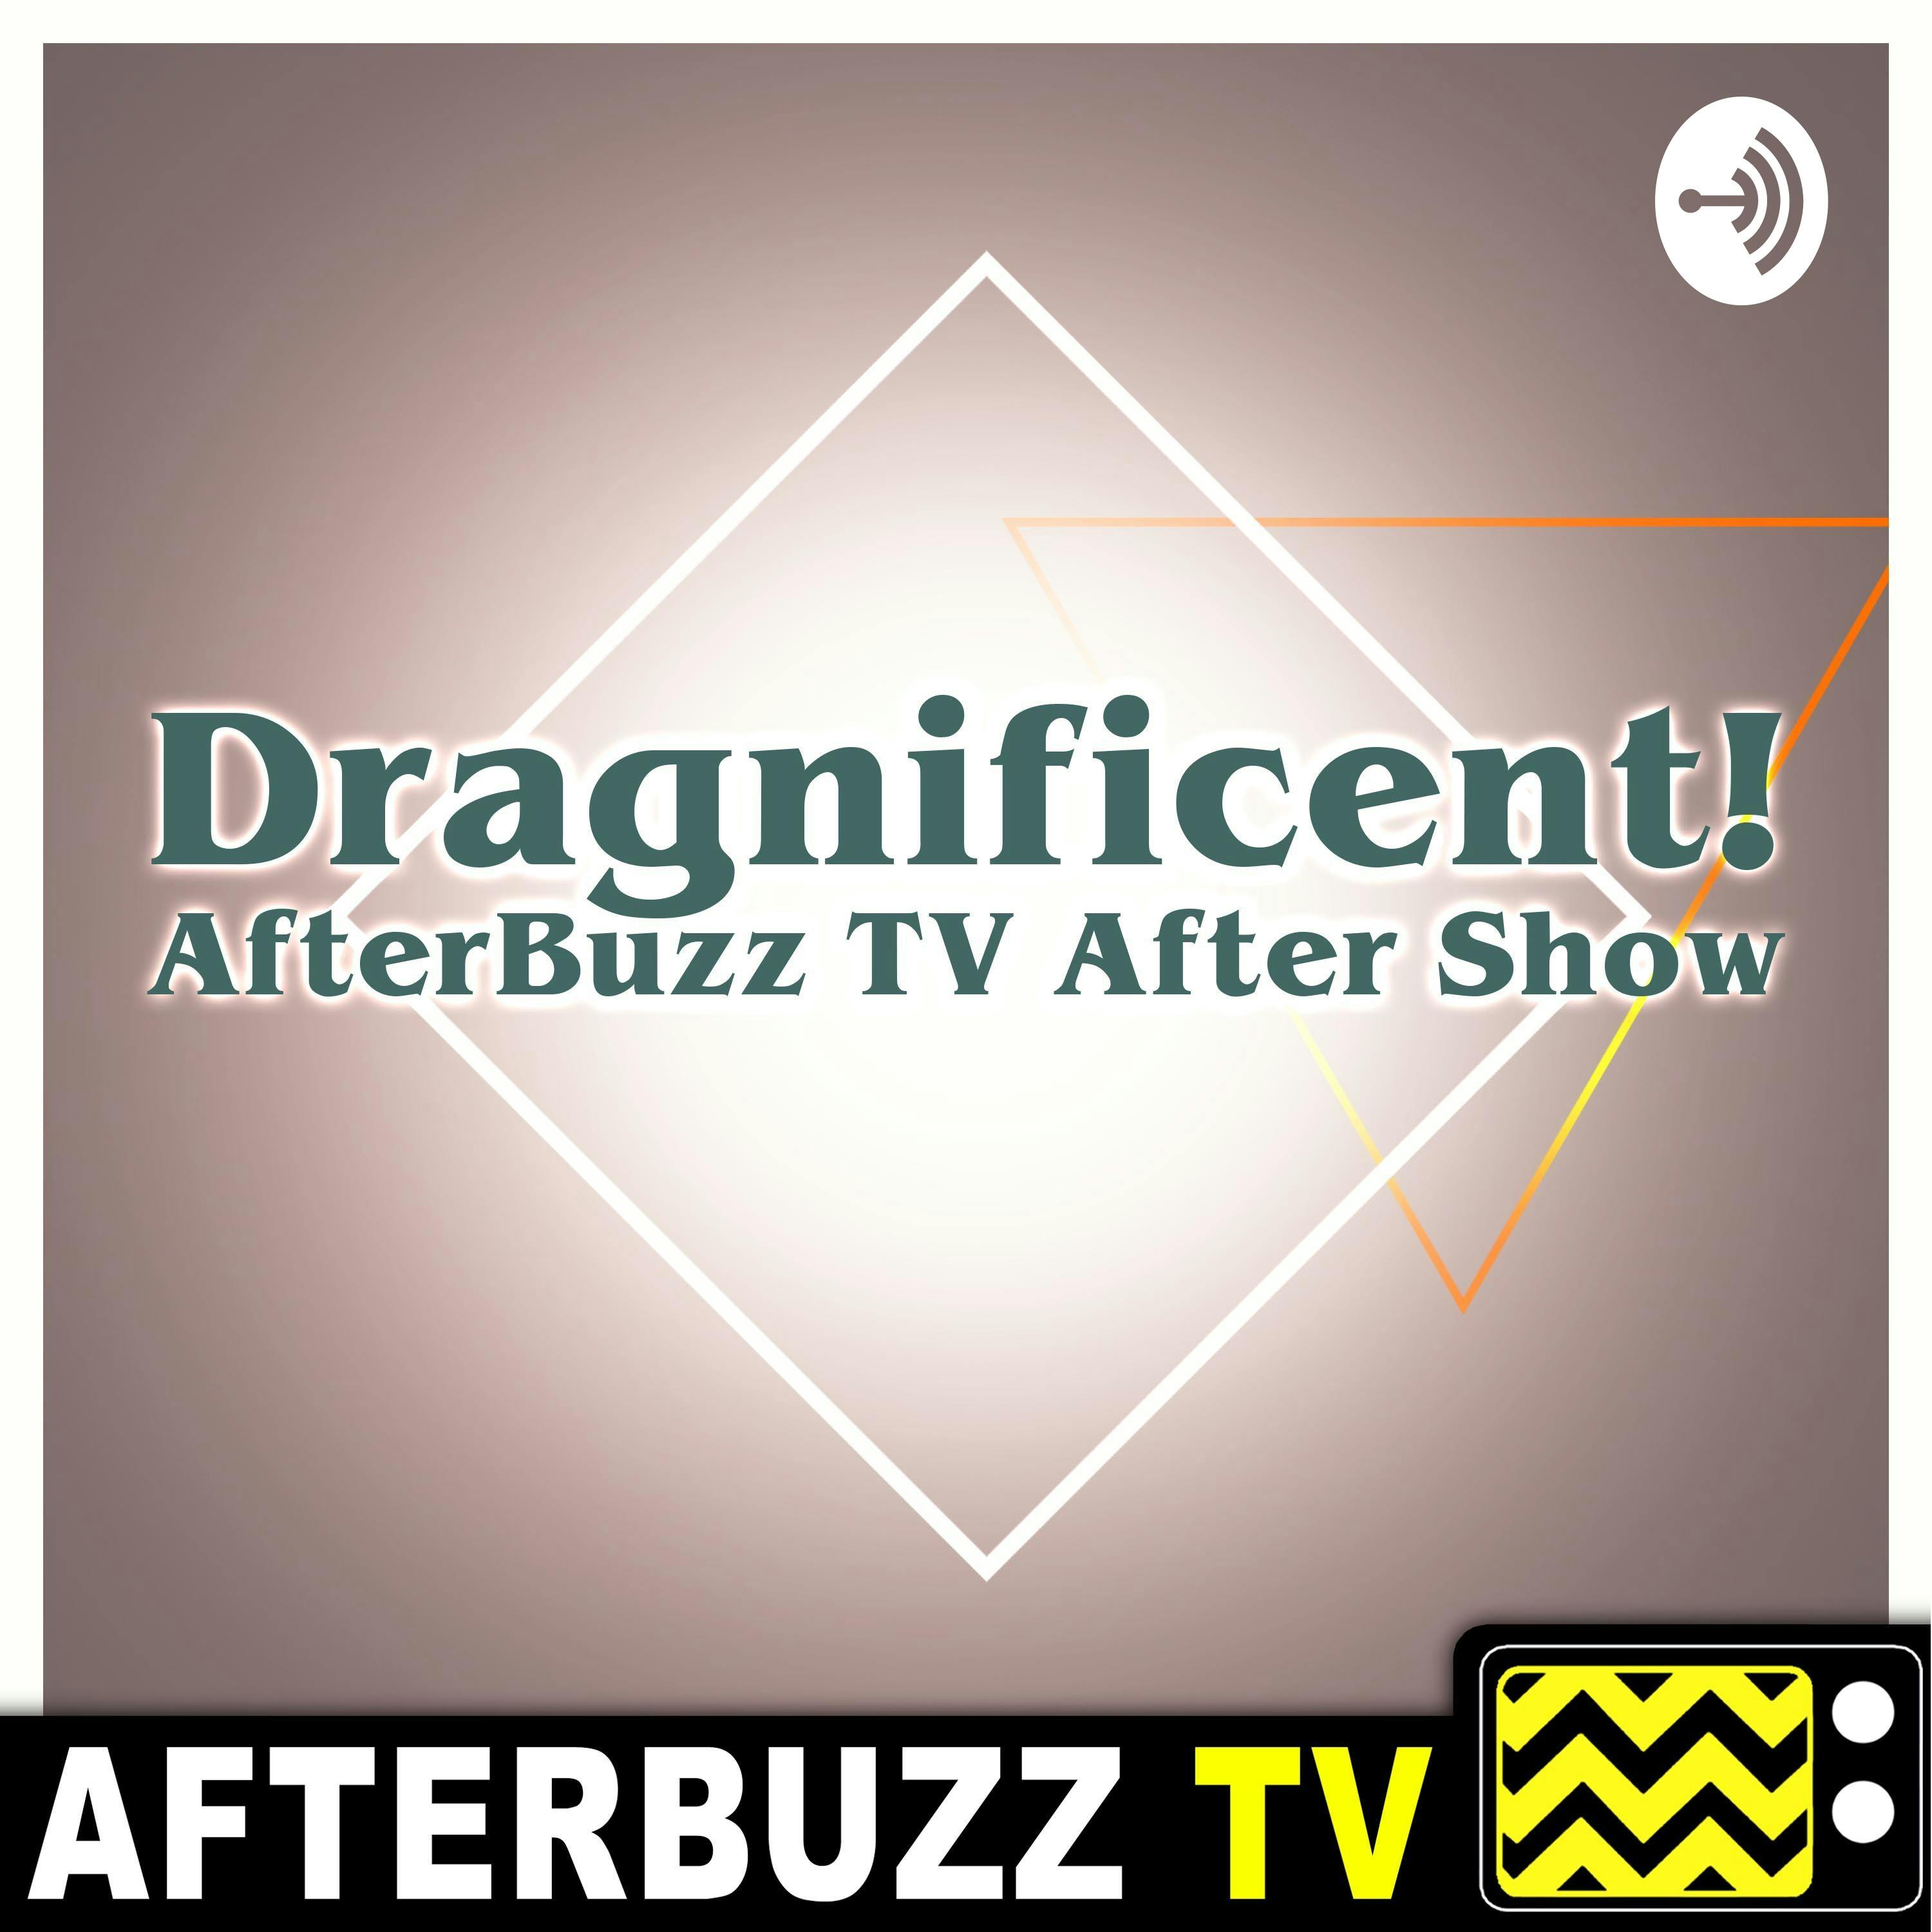 Dragnificent! S1 E6 Recap & After Show: Dragnificent Season Finale!!